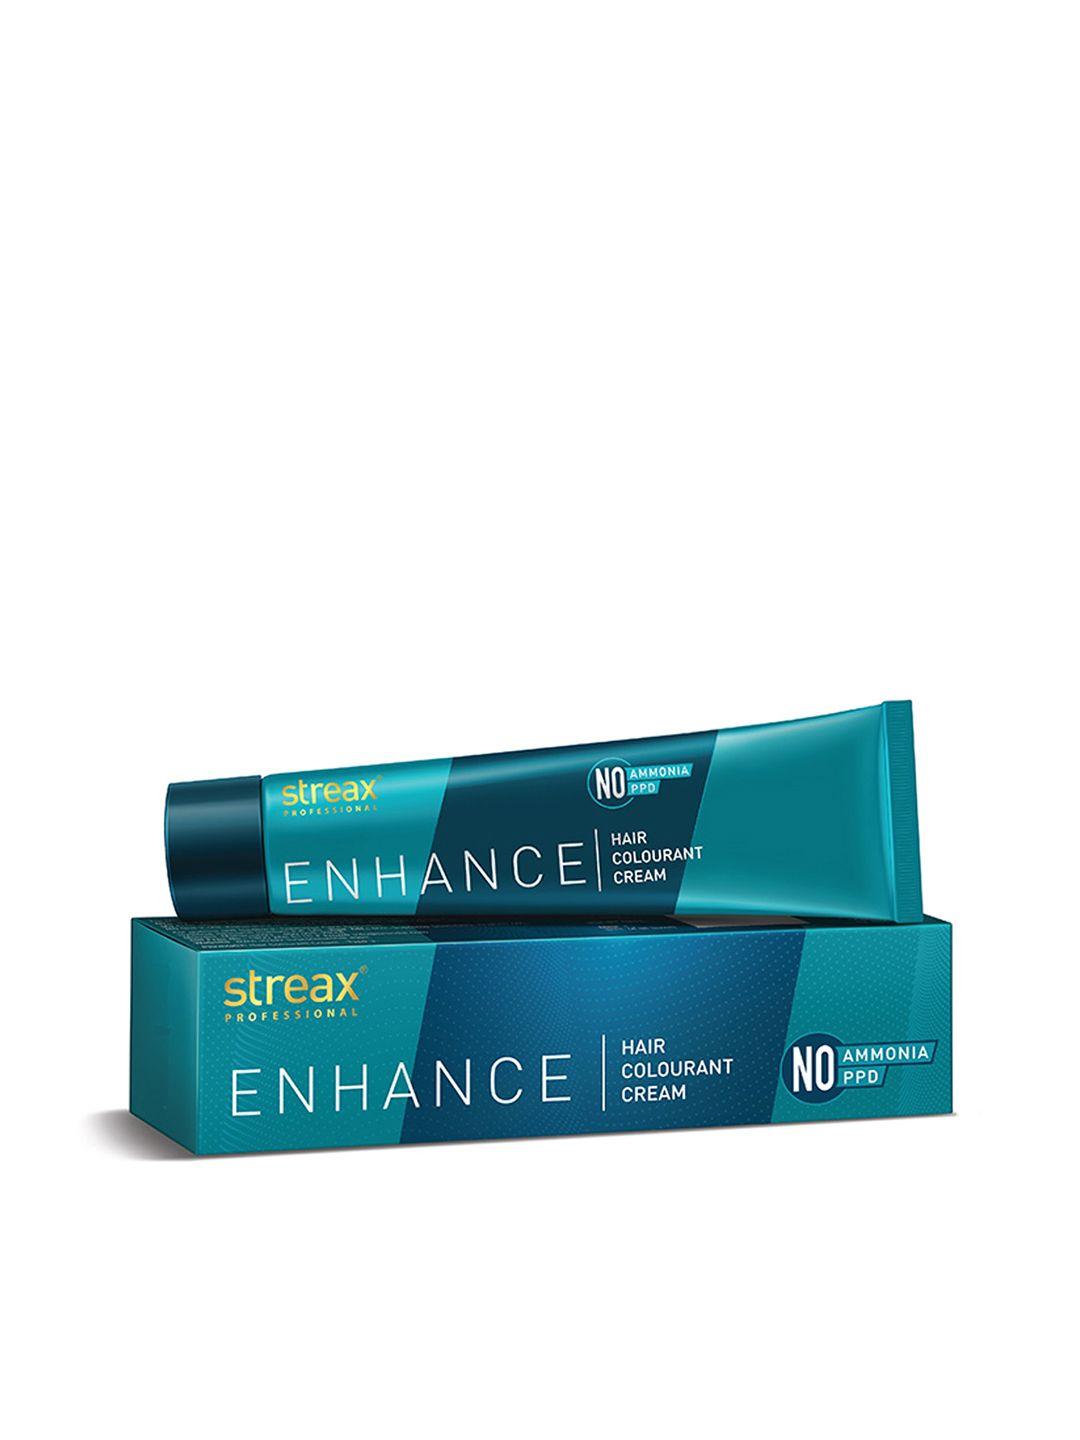 streax professional enhance ammonia & ppd free hair colourant cream 90g - brown 4